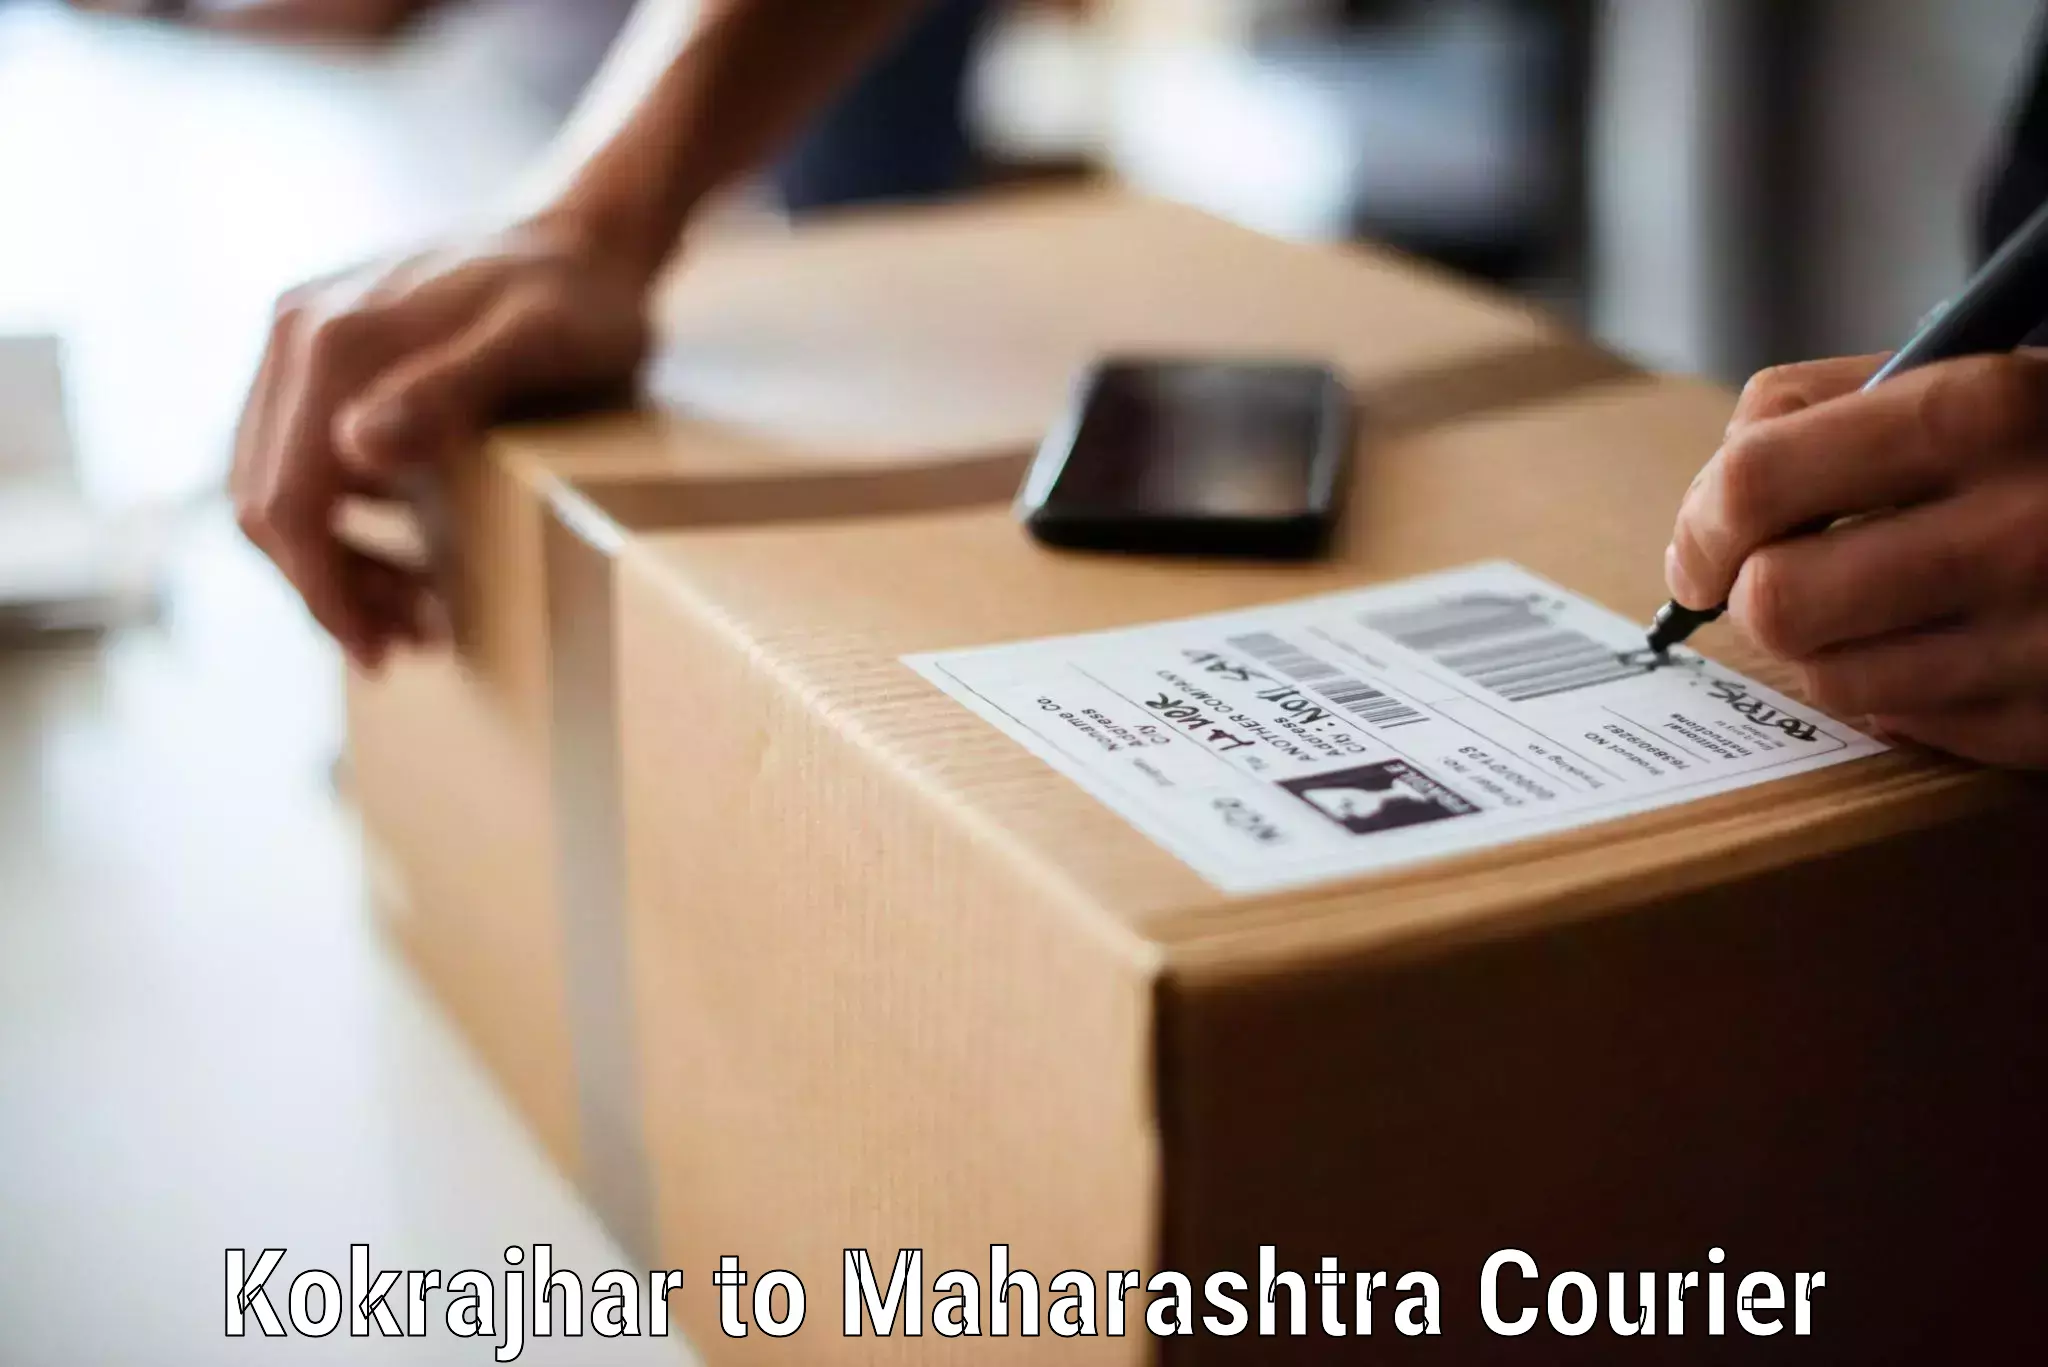 Trusted furniture transport in Kokrajhar to Nanded